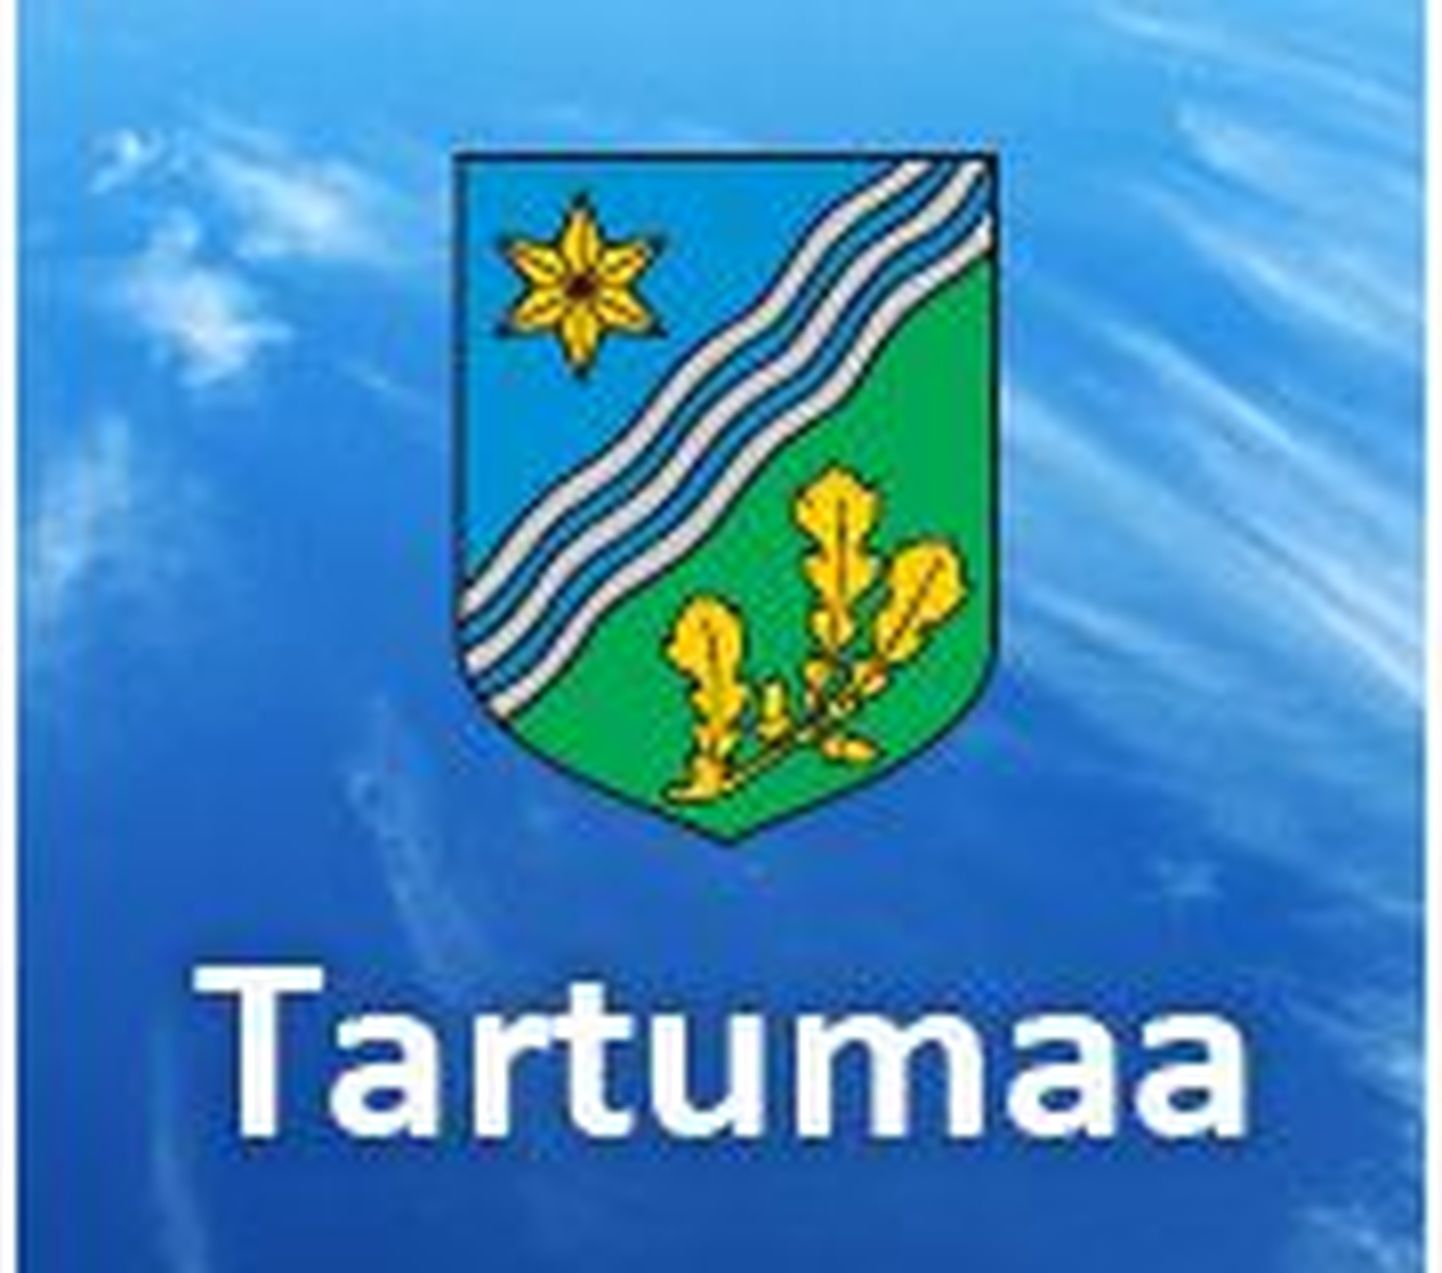 Tartumaa logo.